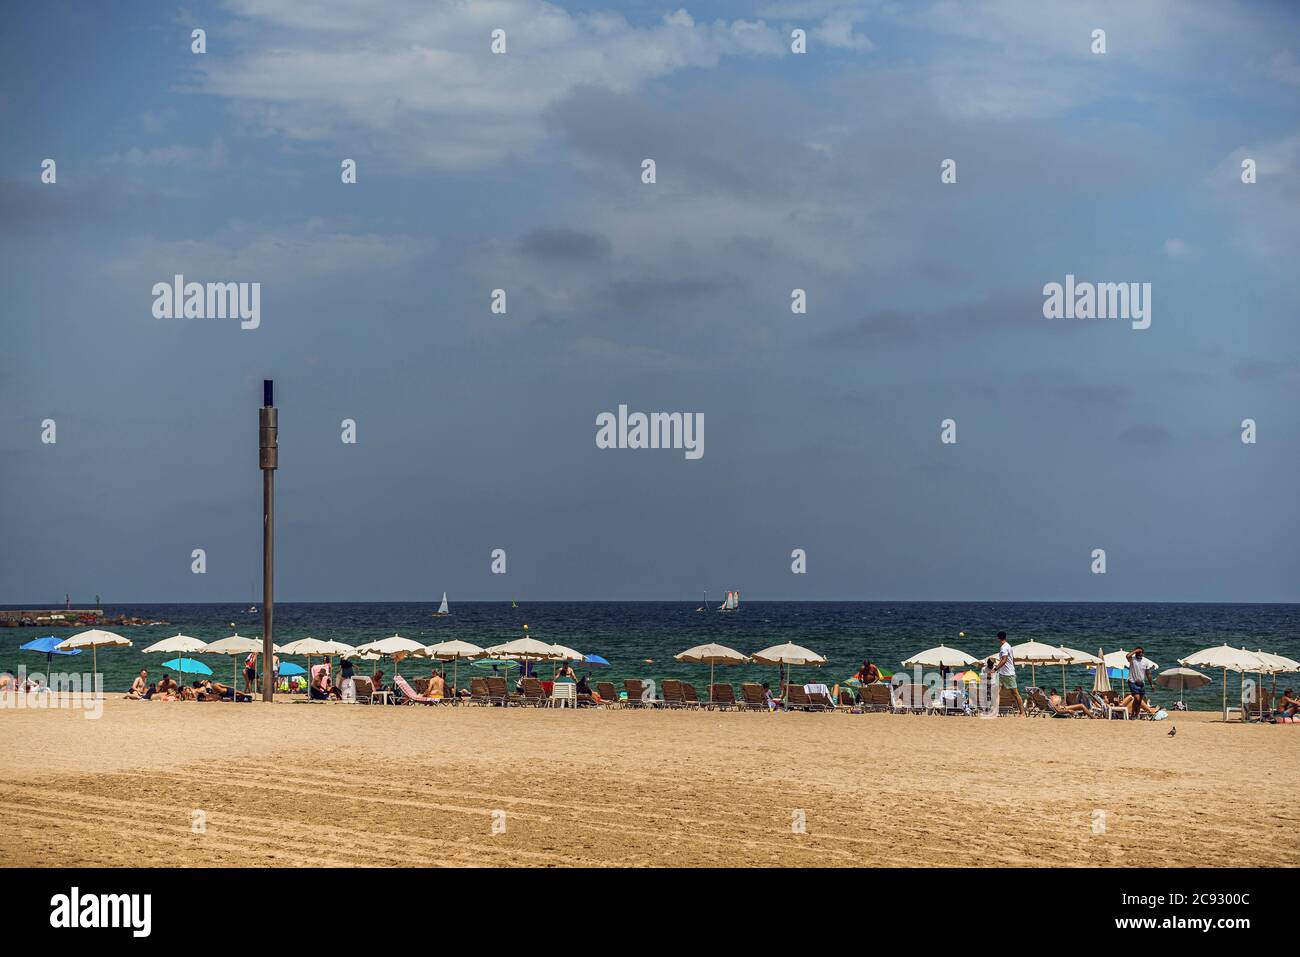 Barcelone, Espagne. 28 juillet 2020. La plage de Barcelone est très fréquentée, l'Allemagne réactualisations ses conseils aux voyageurs pour trois régions espagnoles, dont Barcelone, en raison d'une nouvelle flambée de cas de coronavirus. Crédit: Matthias Oesterle/Alamy Live News Banque D'Images